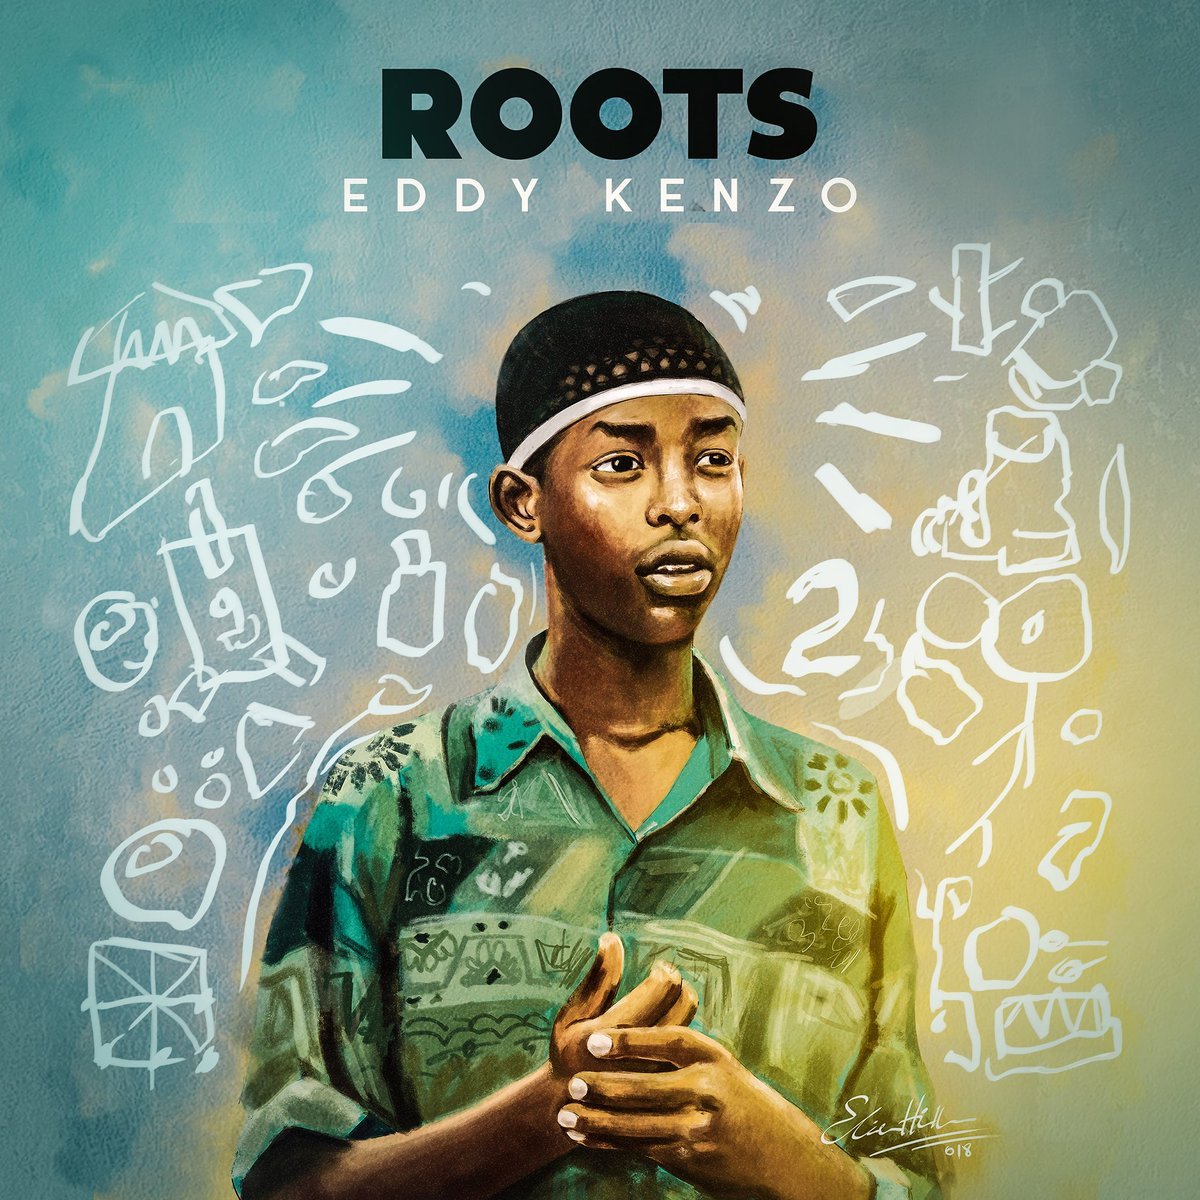 Eddy Kenzo “Roots” Album Released